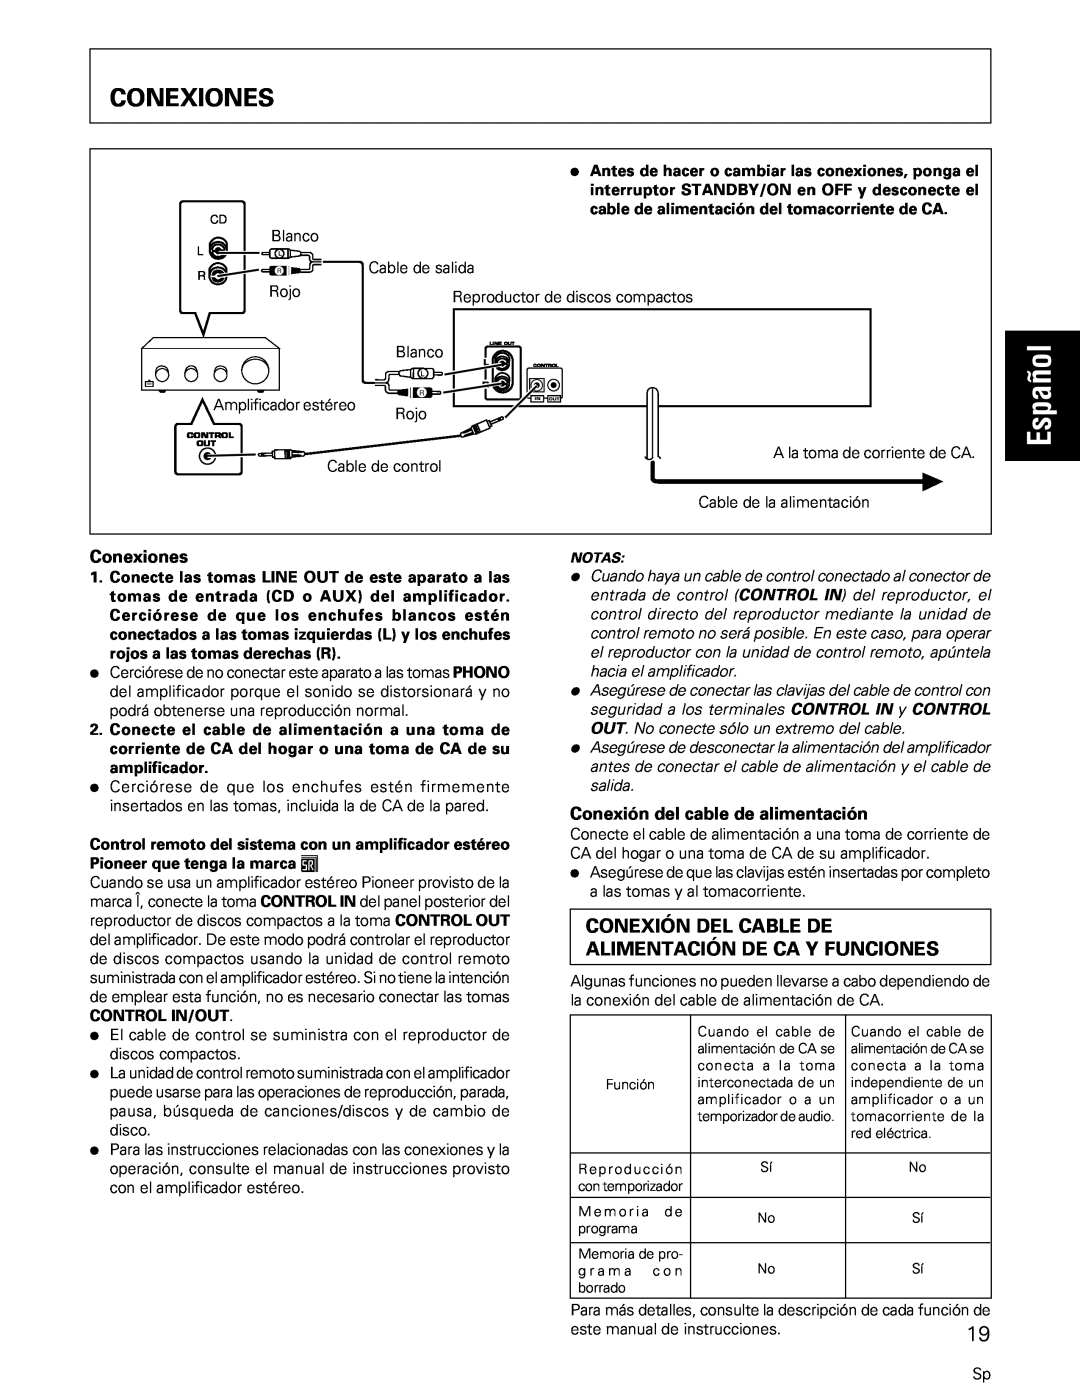 Pioneer PD-M427, PD-M407 manual Conexiones, Español, Conexión del cable de alimentación 